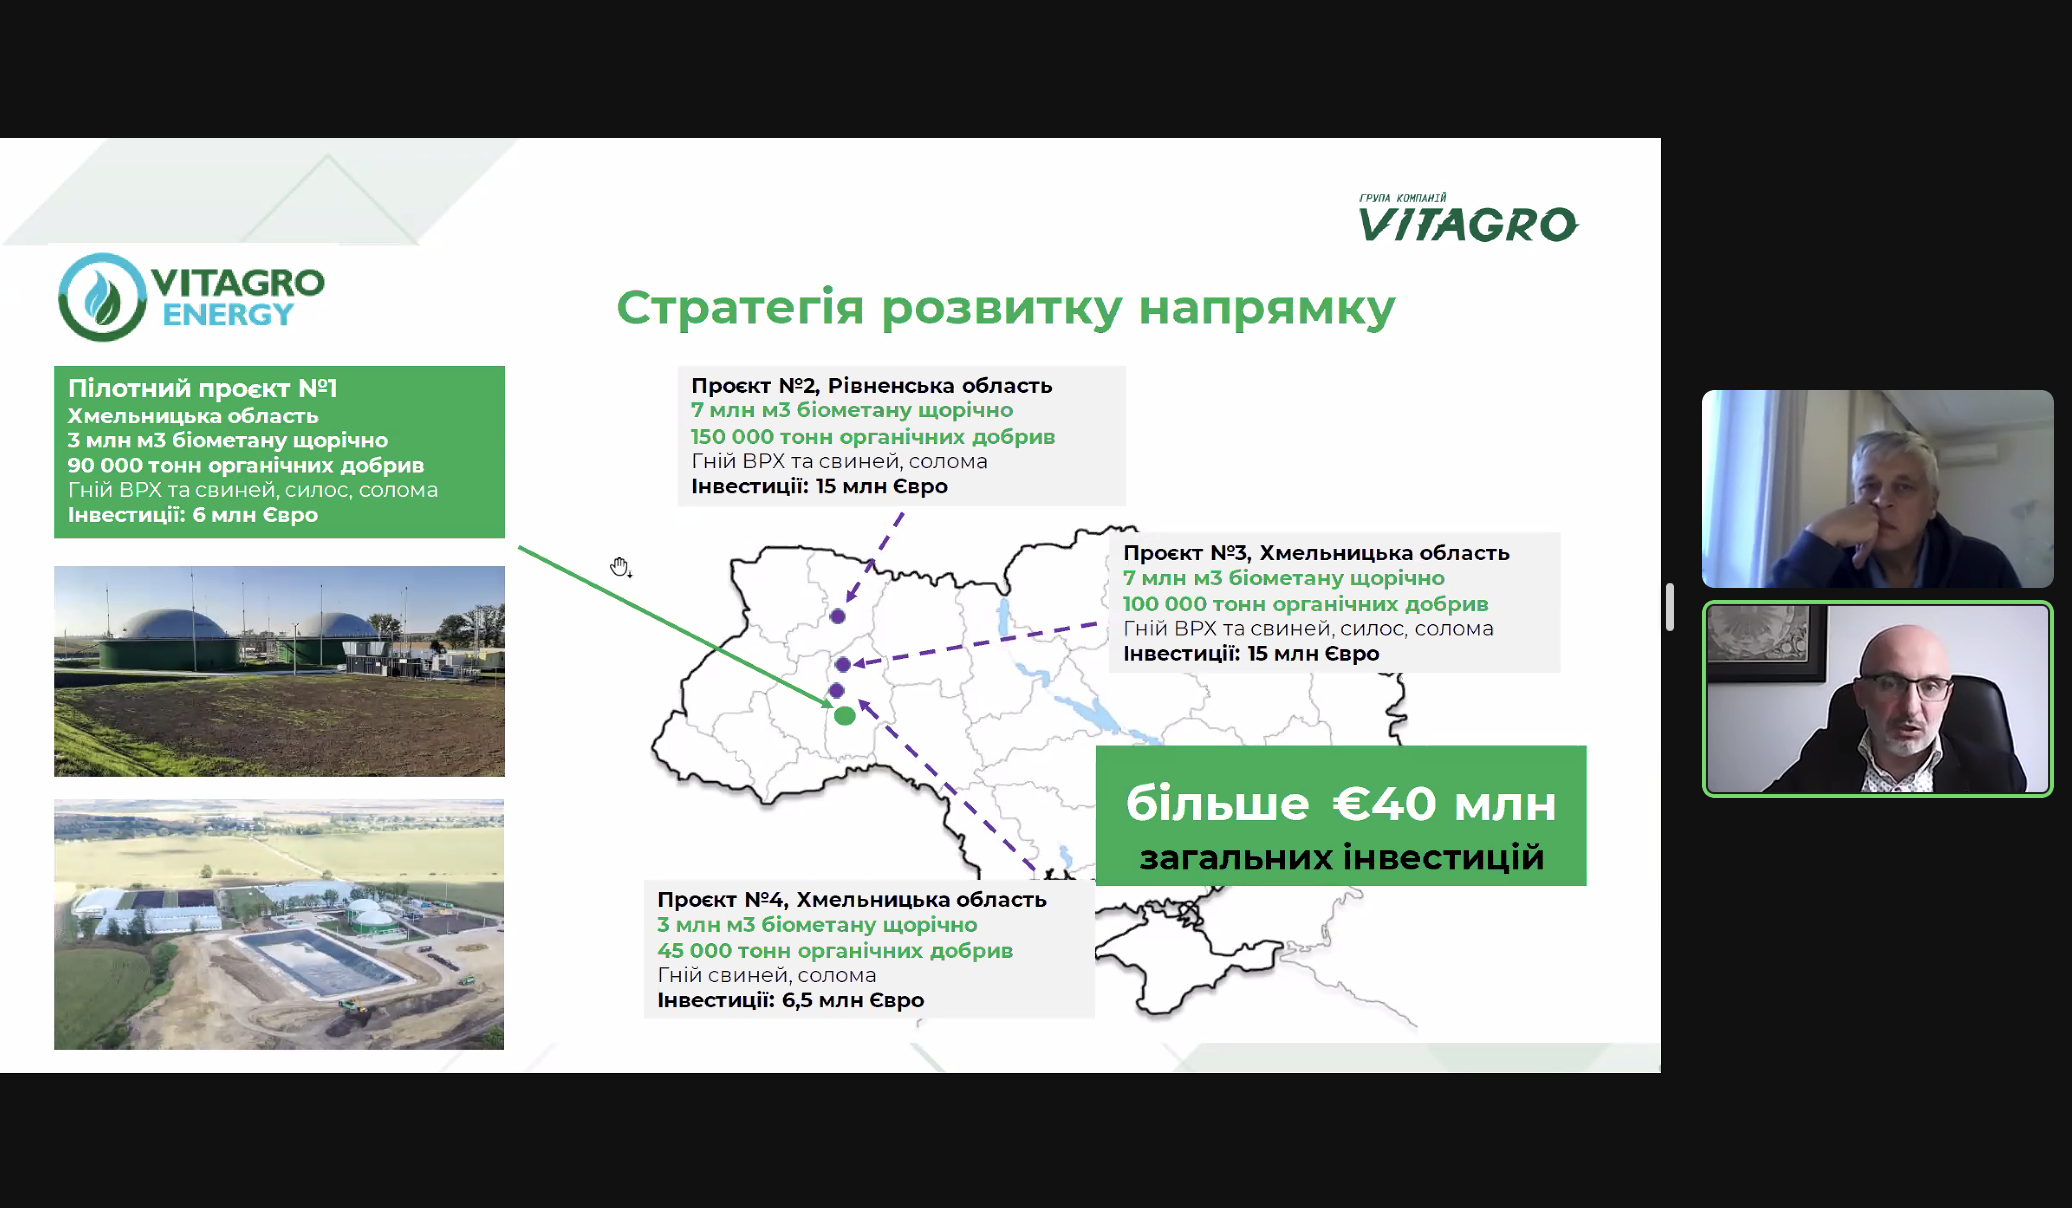 Сергій Савчук: Виробництво біометану та біоетанолу групою Вітагро